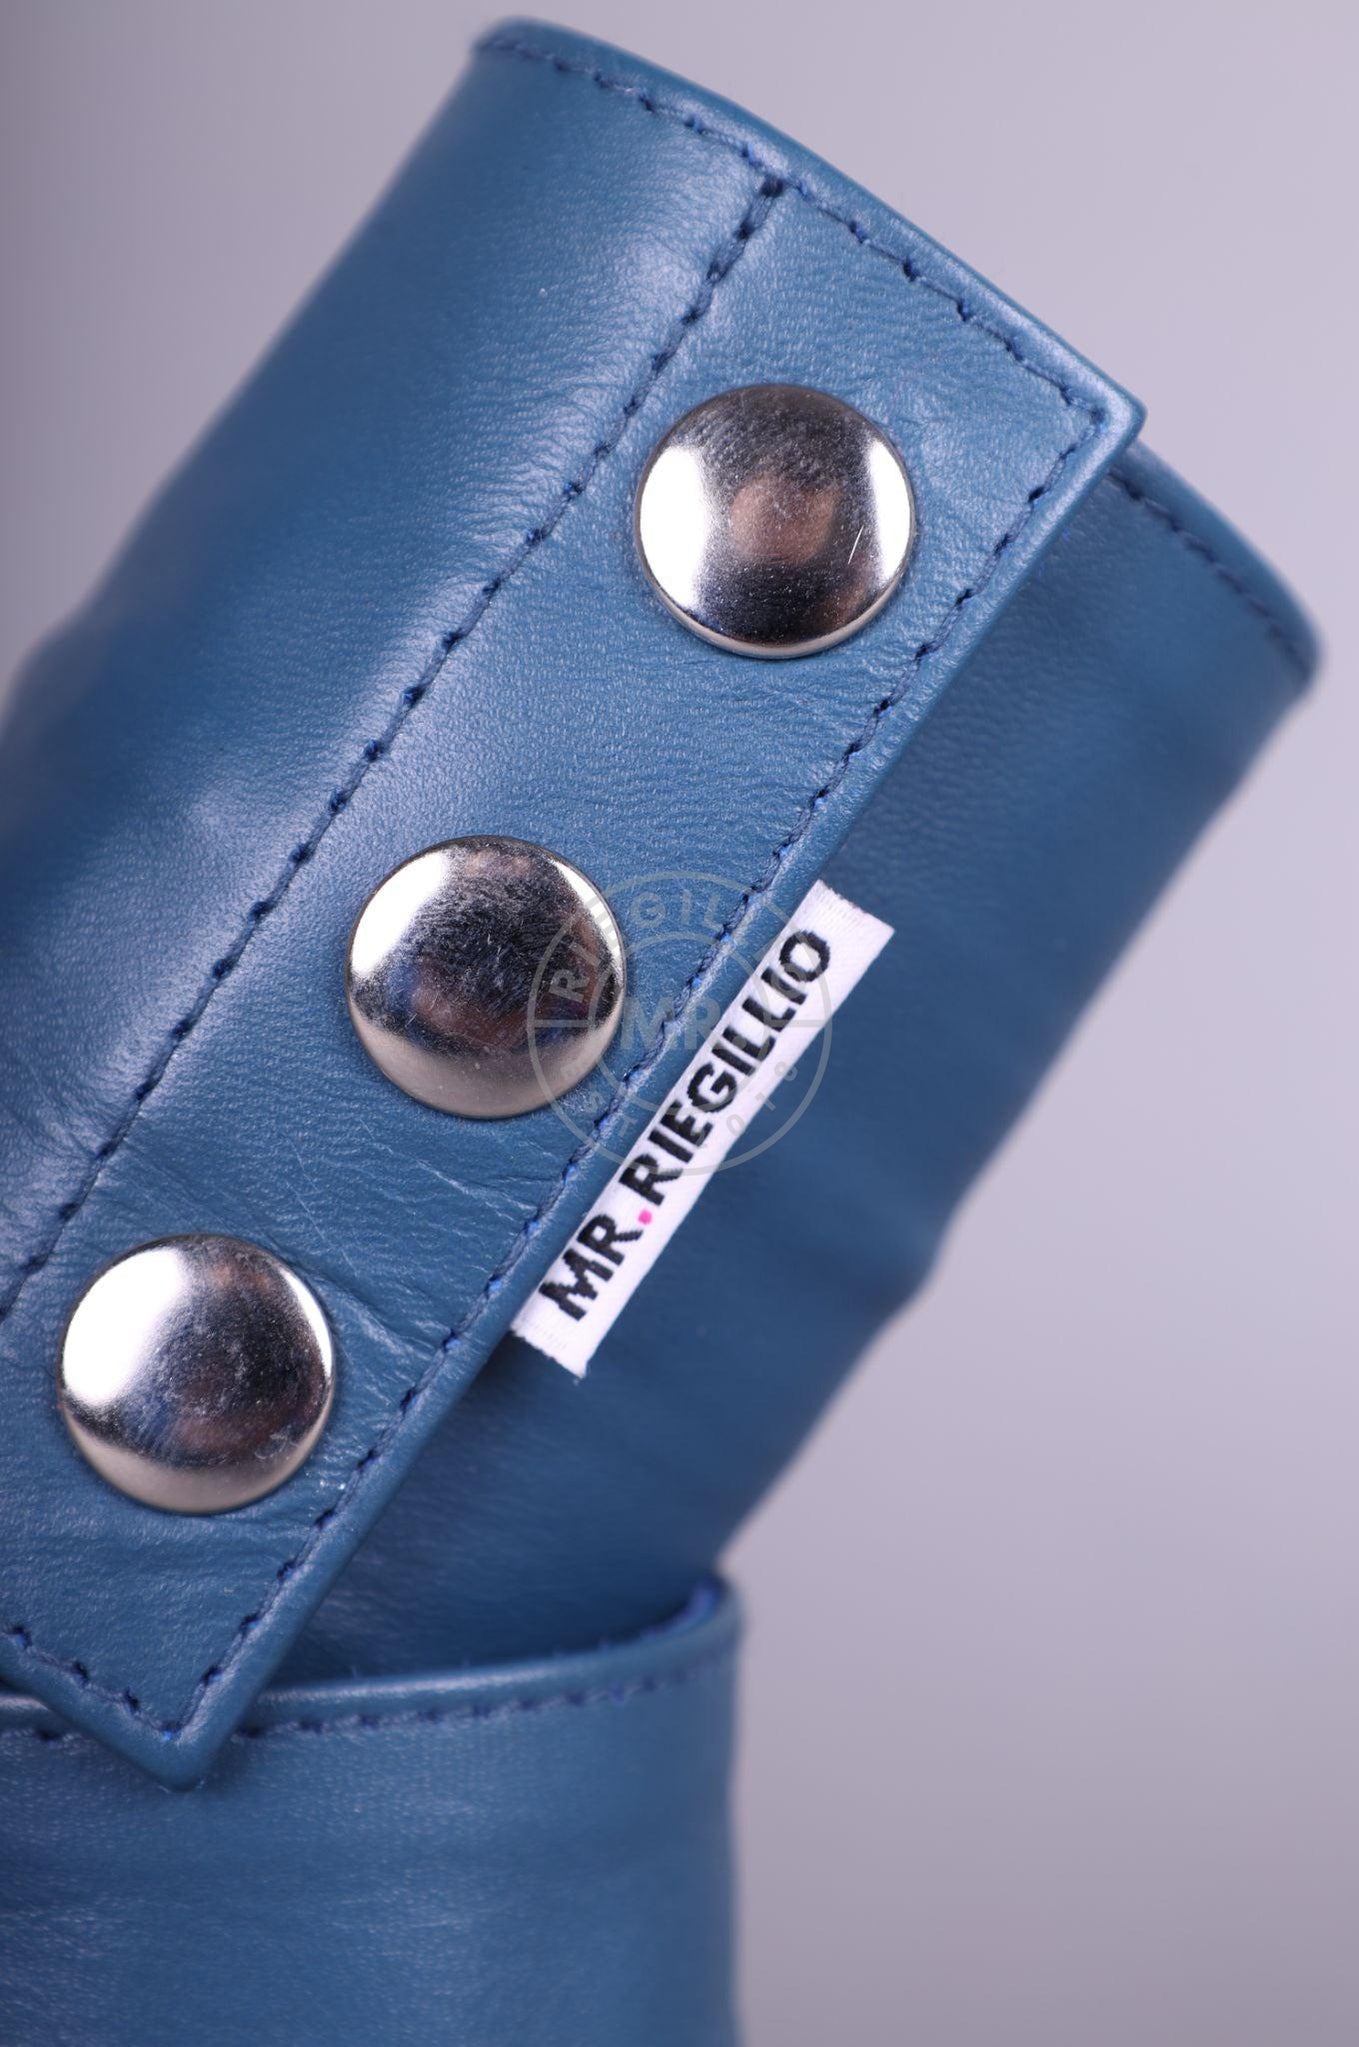 Jeans Blue Wrist Wallet-at MR. Riegillio